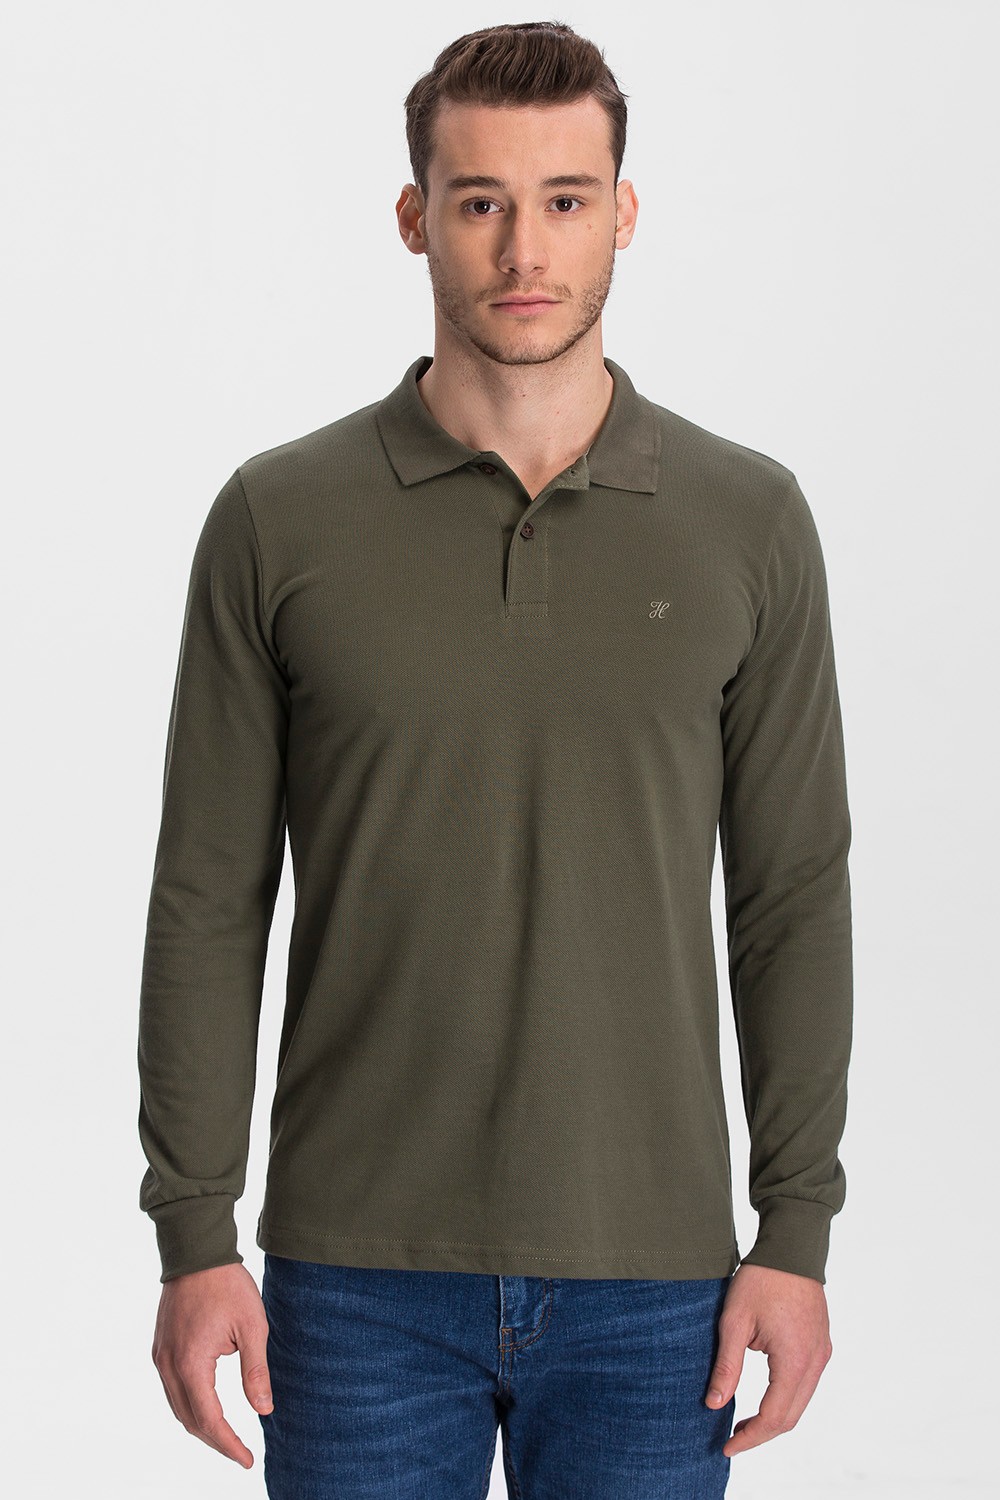 100% Cotton Long Sleeve Polo T-shirt - Khaki